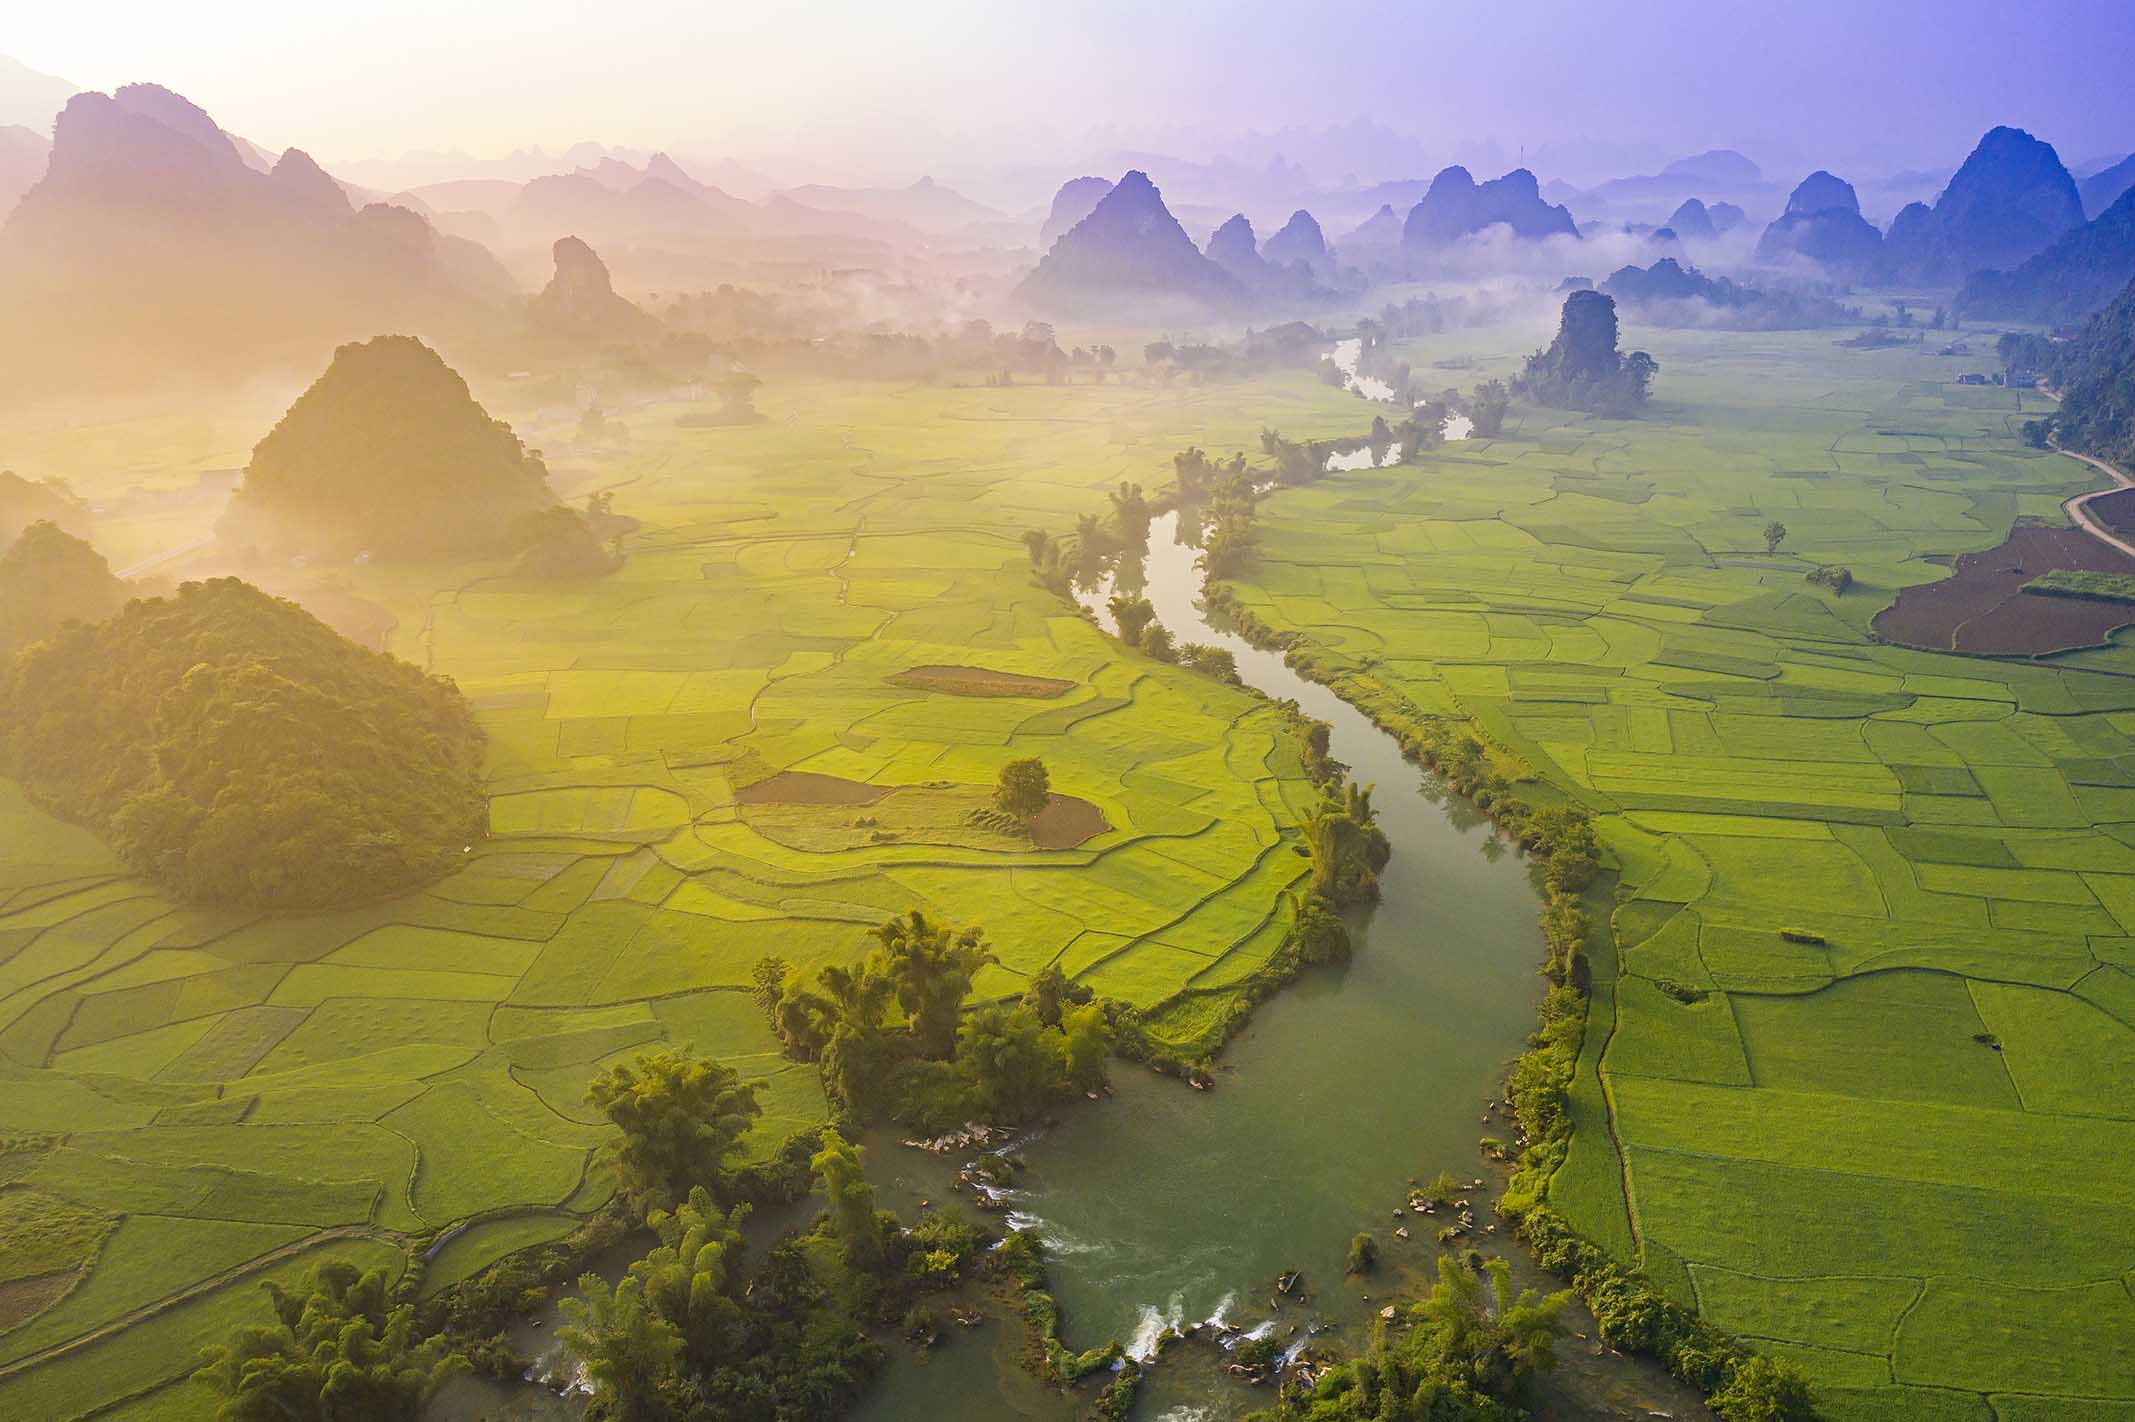 Những tuyệt tác thiên nhiên ở Cao Bằng được đề cử ‘Top 7 Ấn tượng Việt Nam 2022’